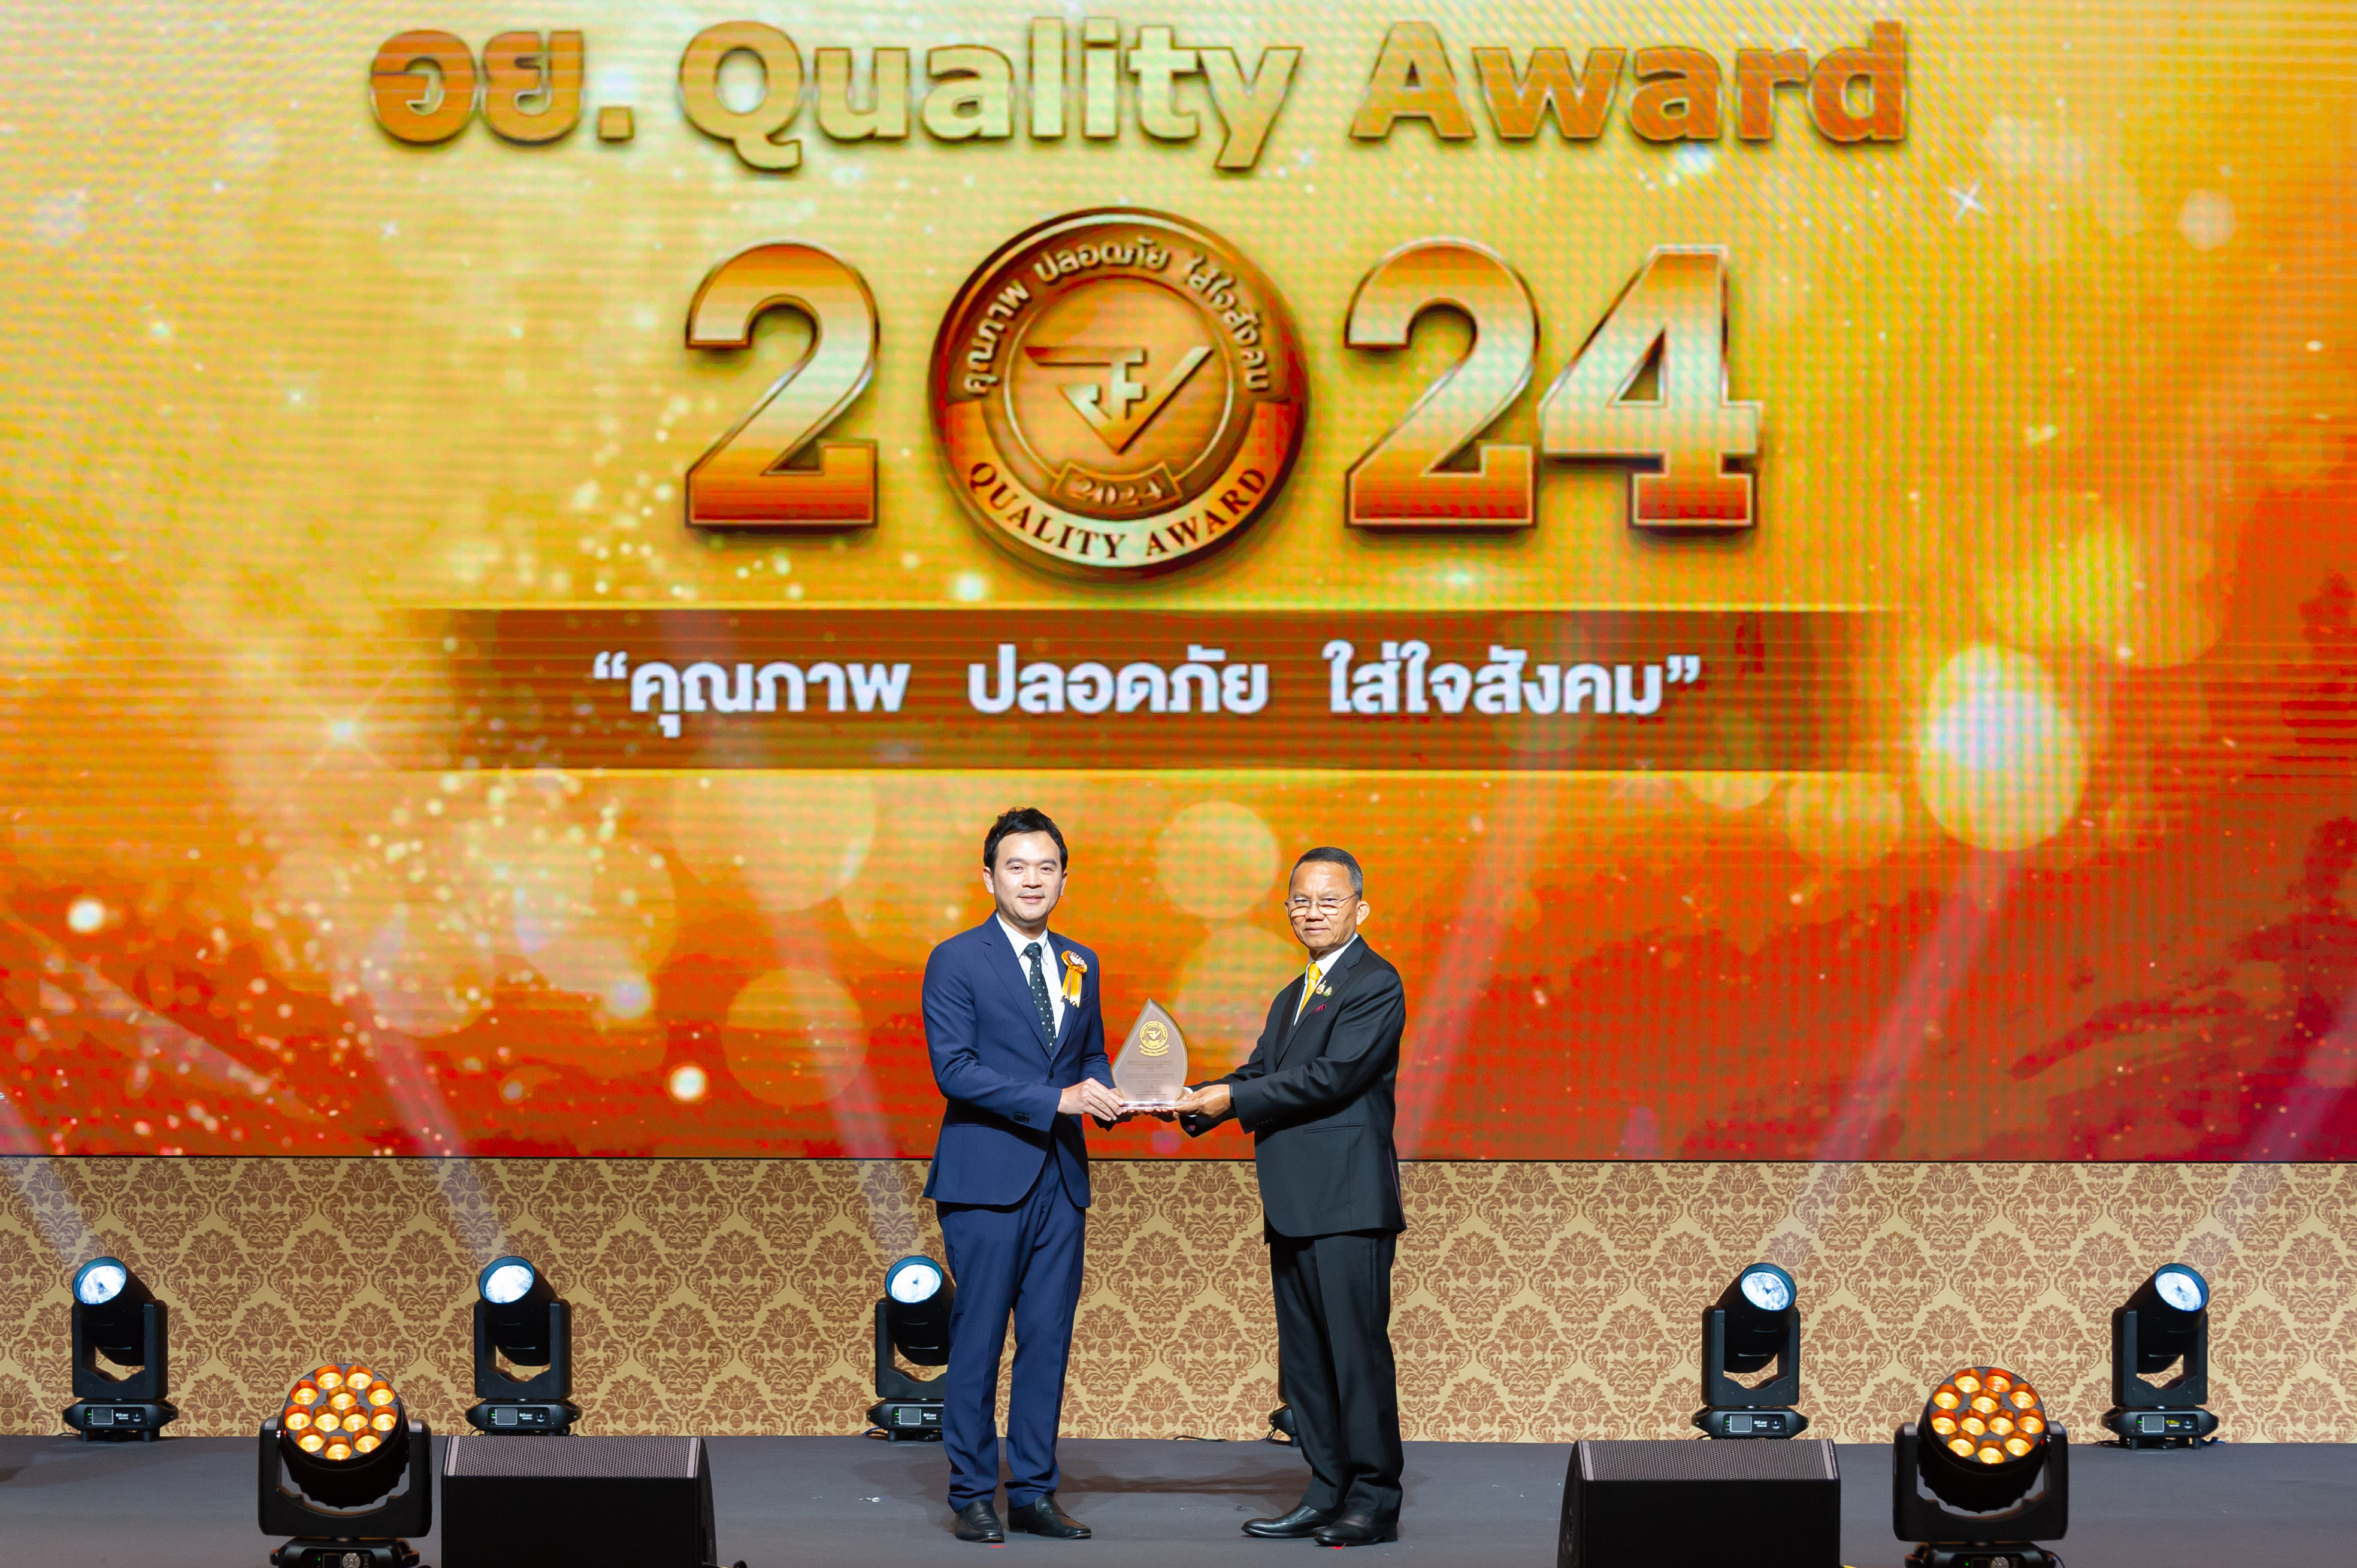  ตอกย้ำด้วยรางวัลแห่งคุณภาพ 3 ปีซ้อน  อย. Quality Award 2024